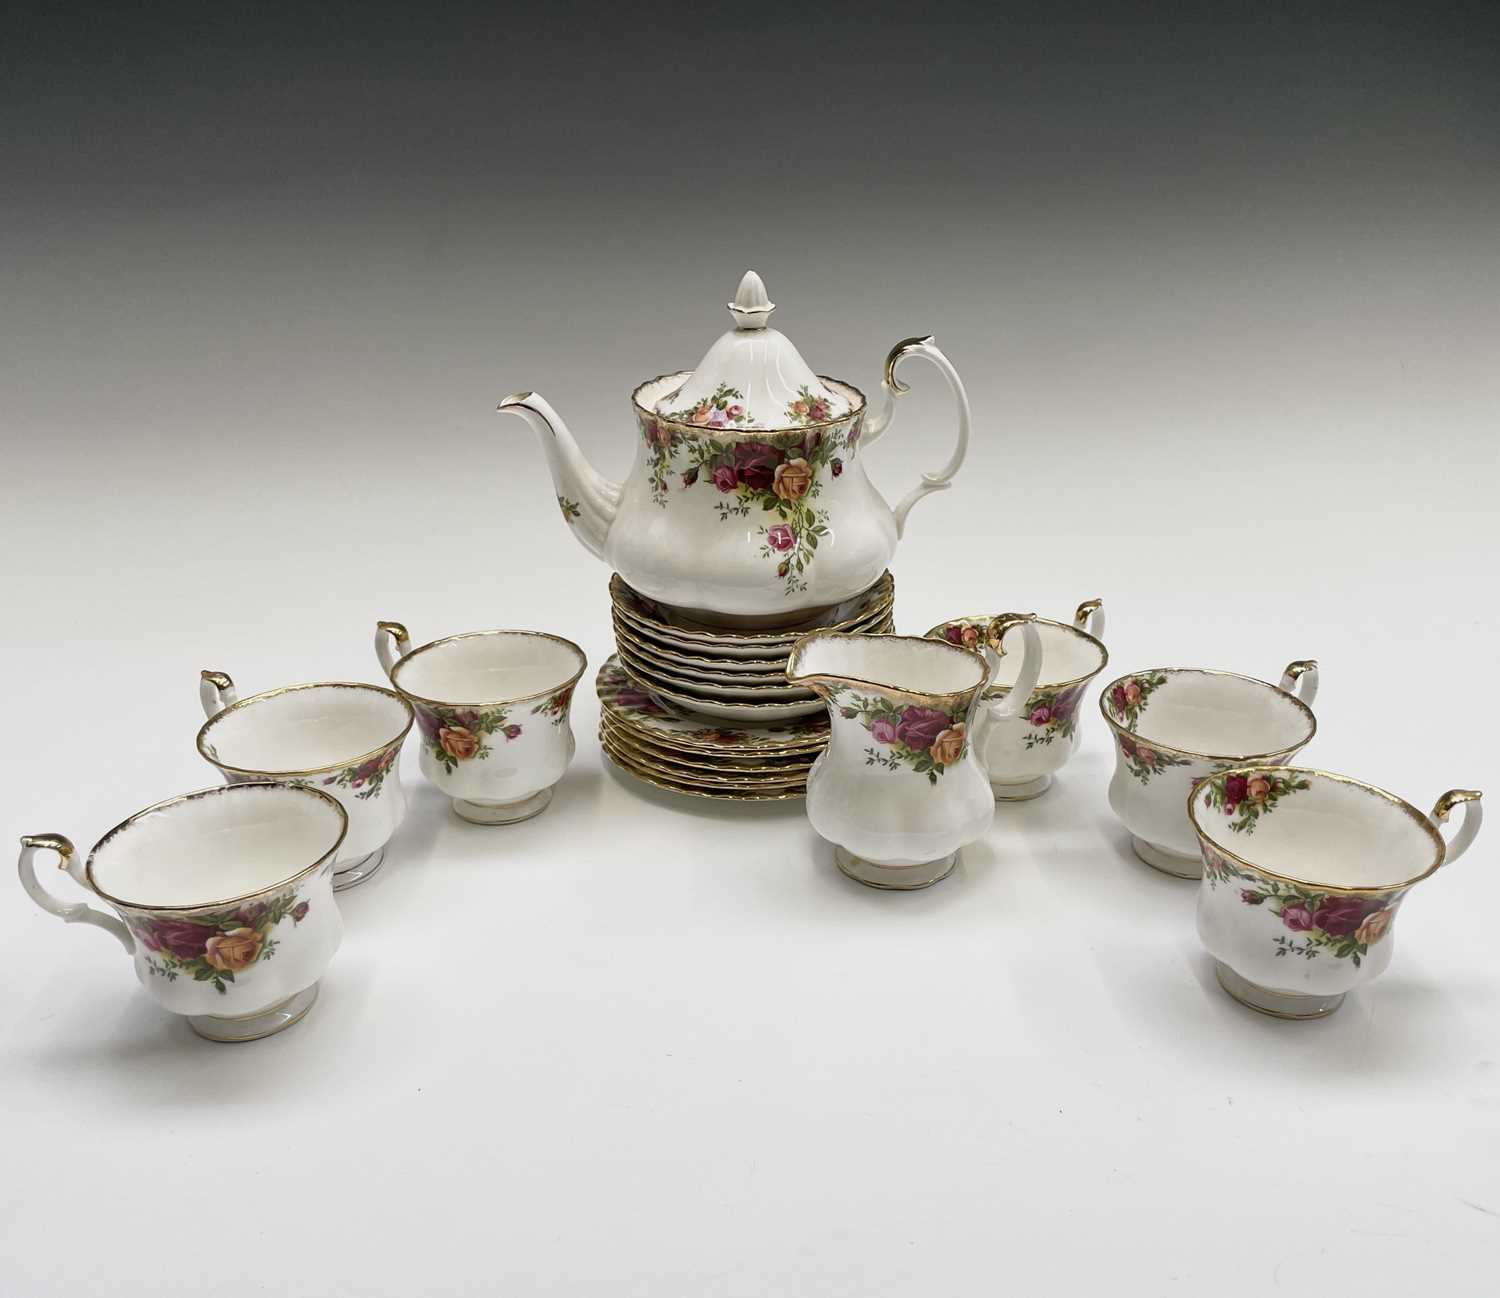 A Royal Albert 'Old Country Roses' tea set comprising teapot, milk jug, six cups, six saucers, and